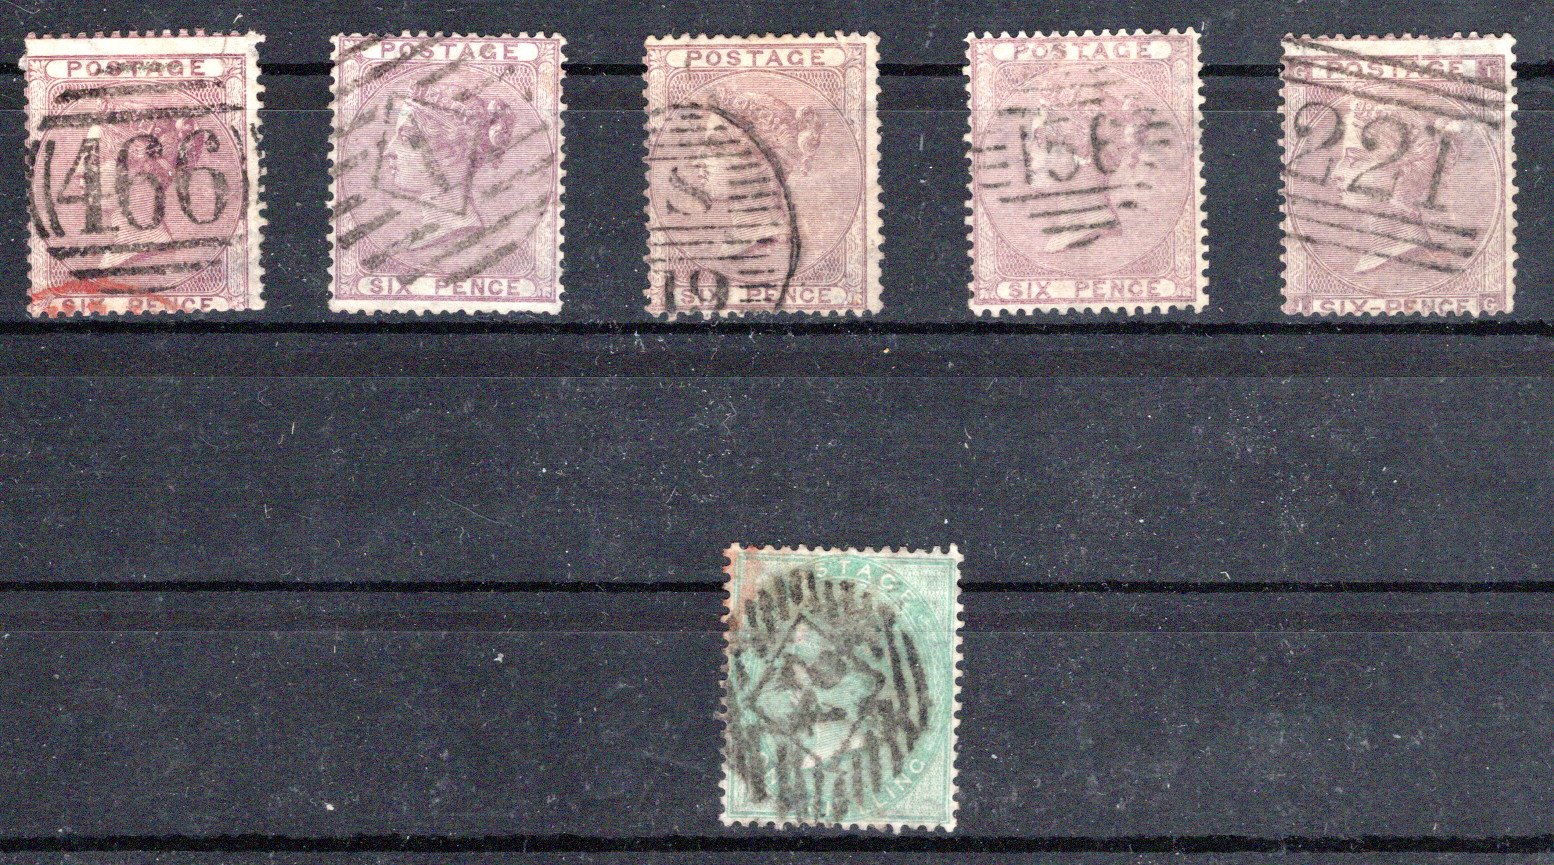 Lot 916 - Great Britain Great Britain -  Georg Bühler Briefmarken Auktionen GmbH 27th mail bid auction